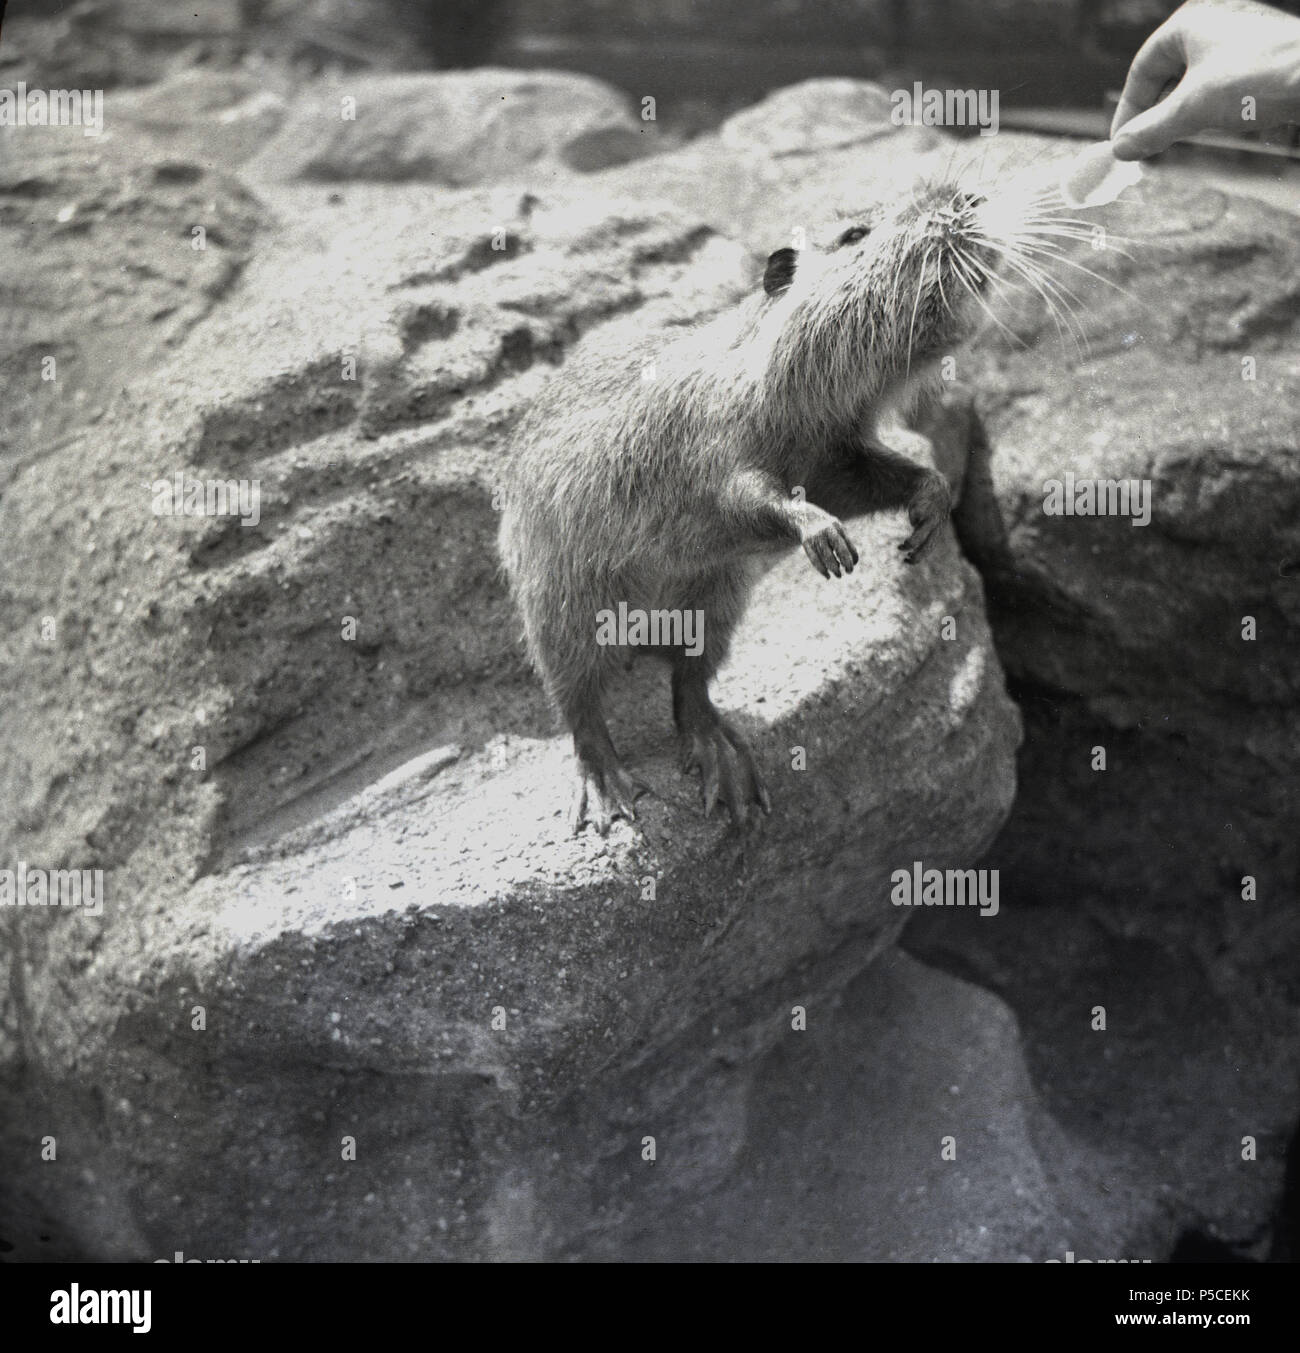 Degli anni Cinquanta, lo Zoo di Edimburgo e un nord americana o canadese beaver proteso su alcune rocce come egli ha dato un po' di cibo da parte di un visitatore, Scotland, Regno Unito. Foto Stock